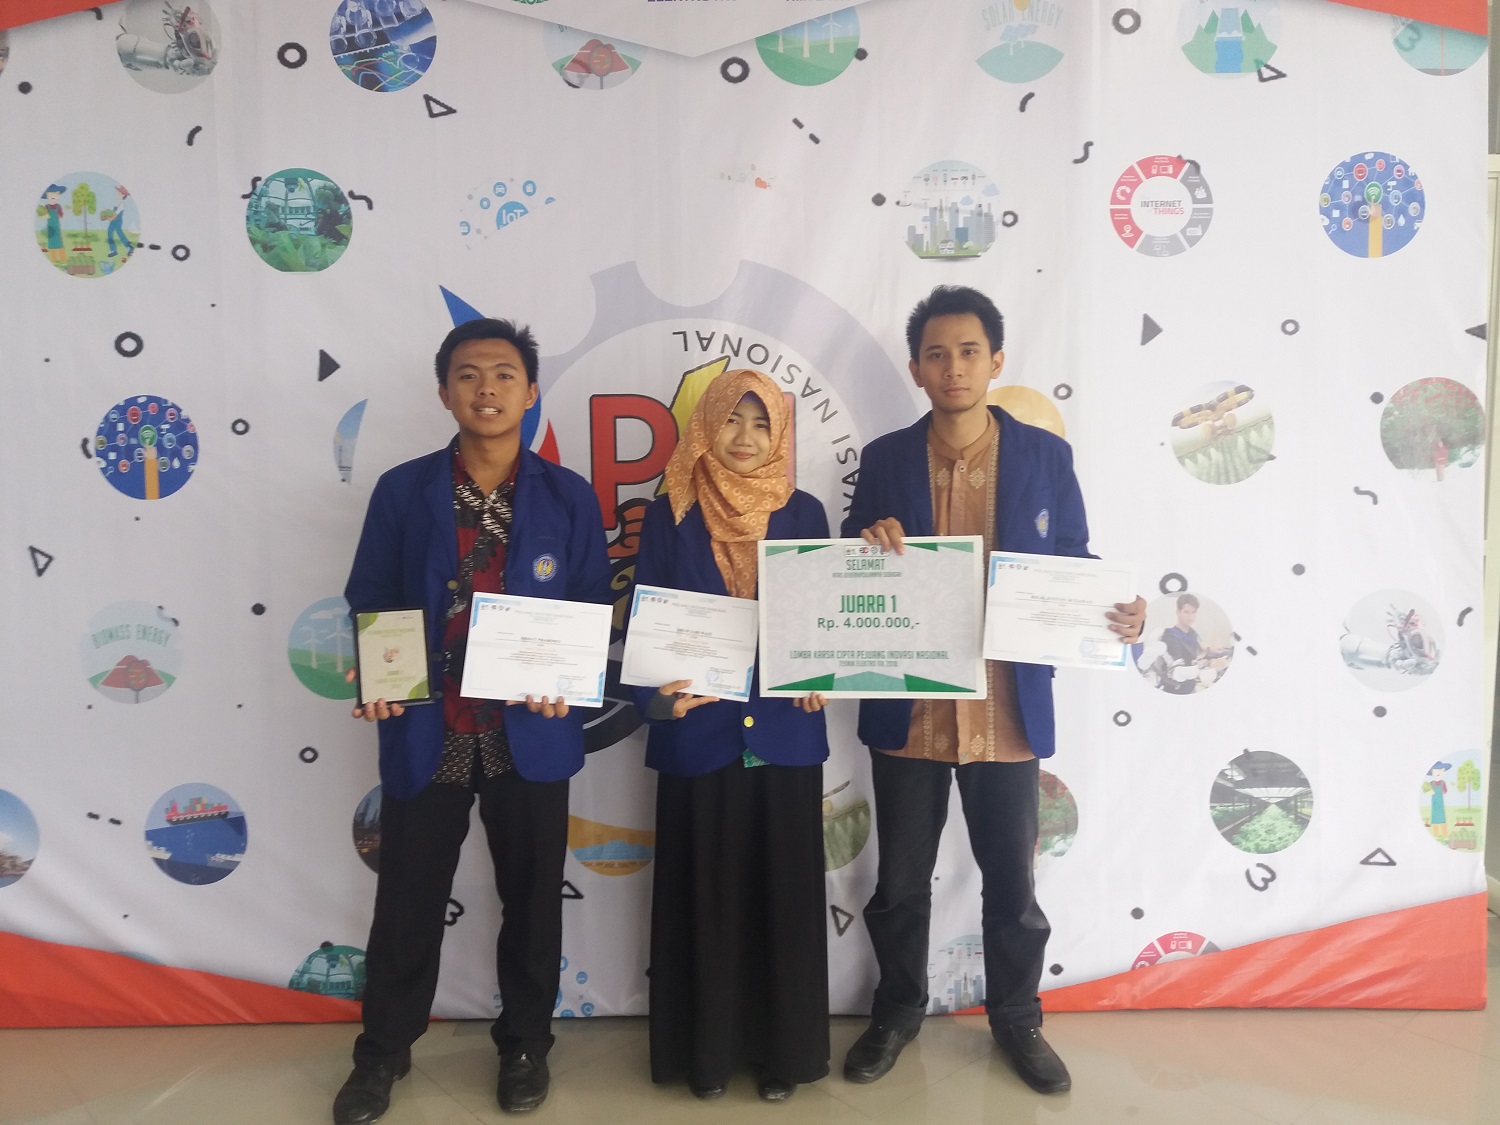 Foto 1ST Winner of Karsa Cipta Competition in Pejuang Inovasi Nasional Event at Kalimantan Institute of Technology, Balikpapan, September 2018